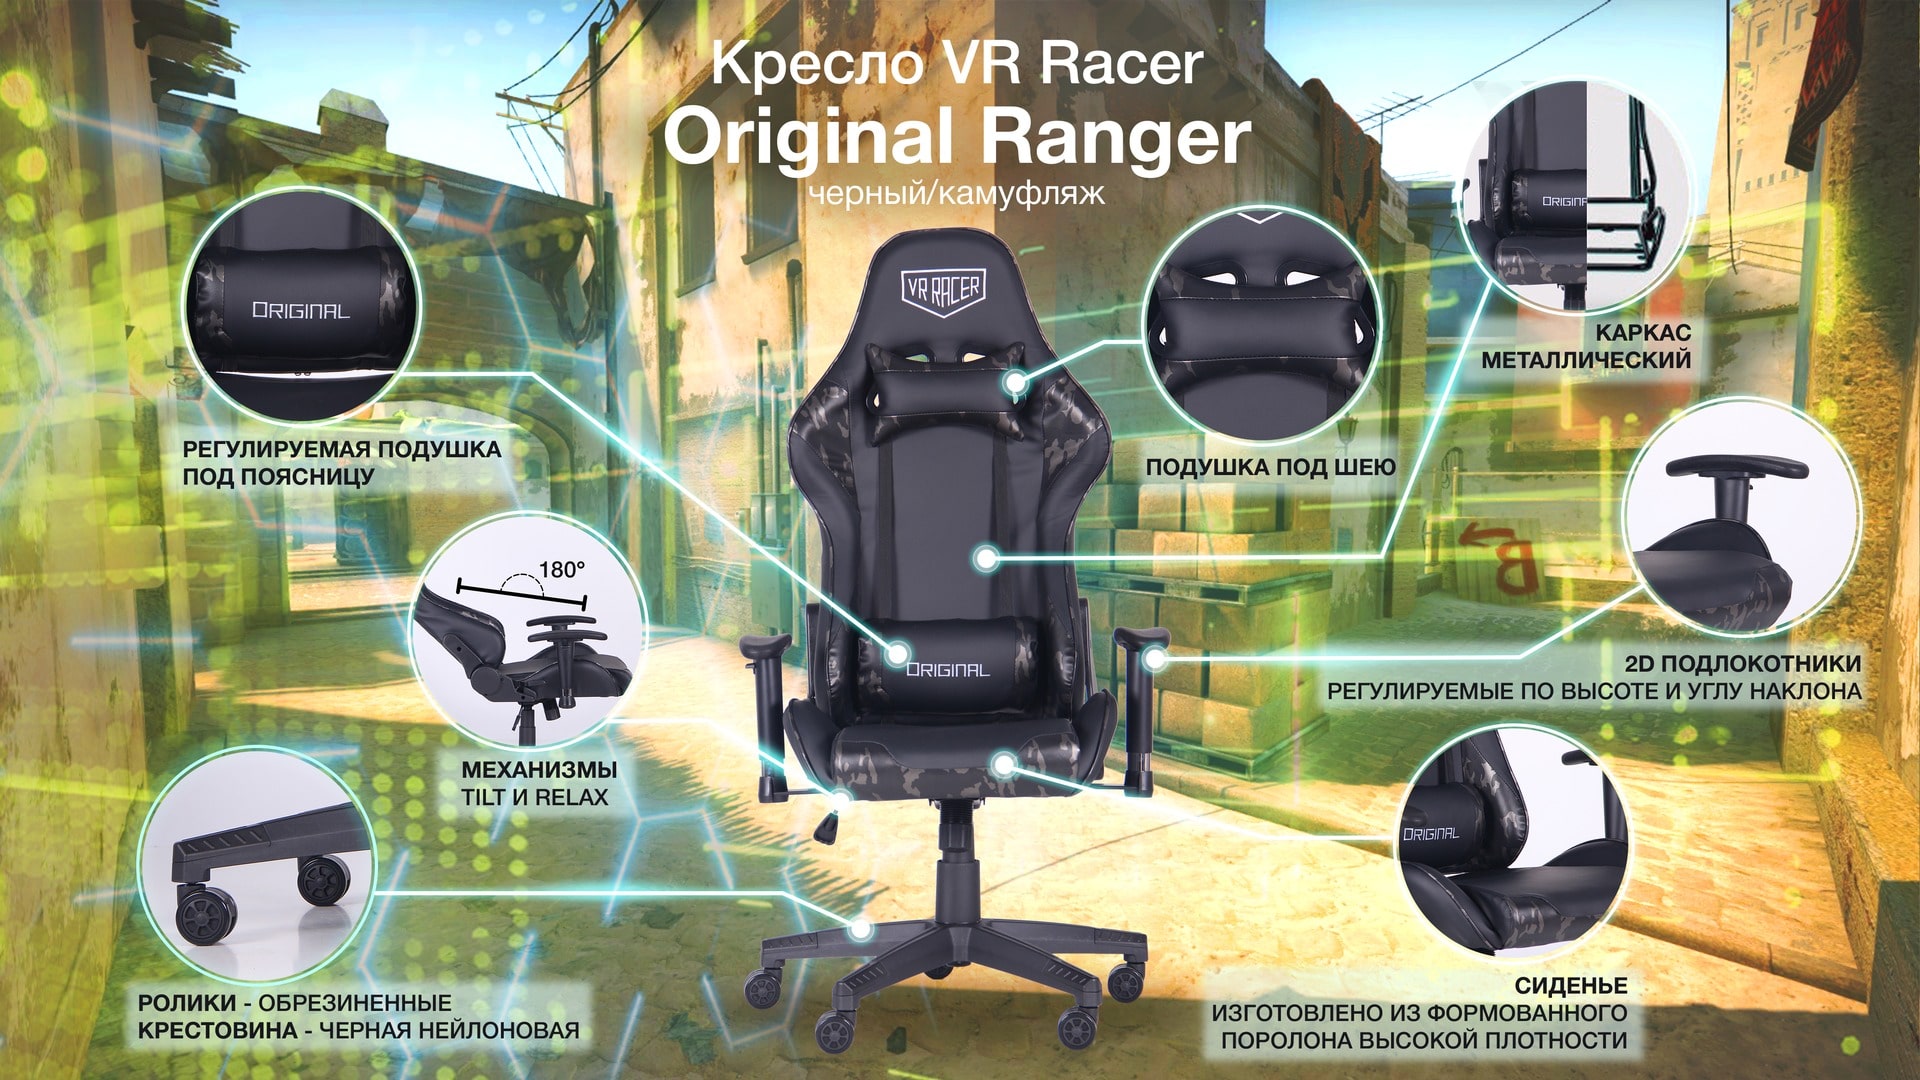 Кресло VR Racer Original Ranger описание